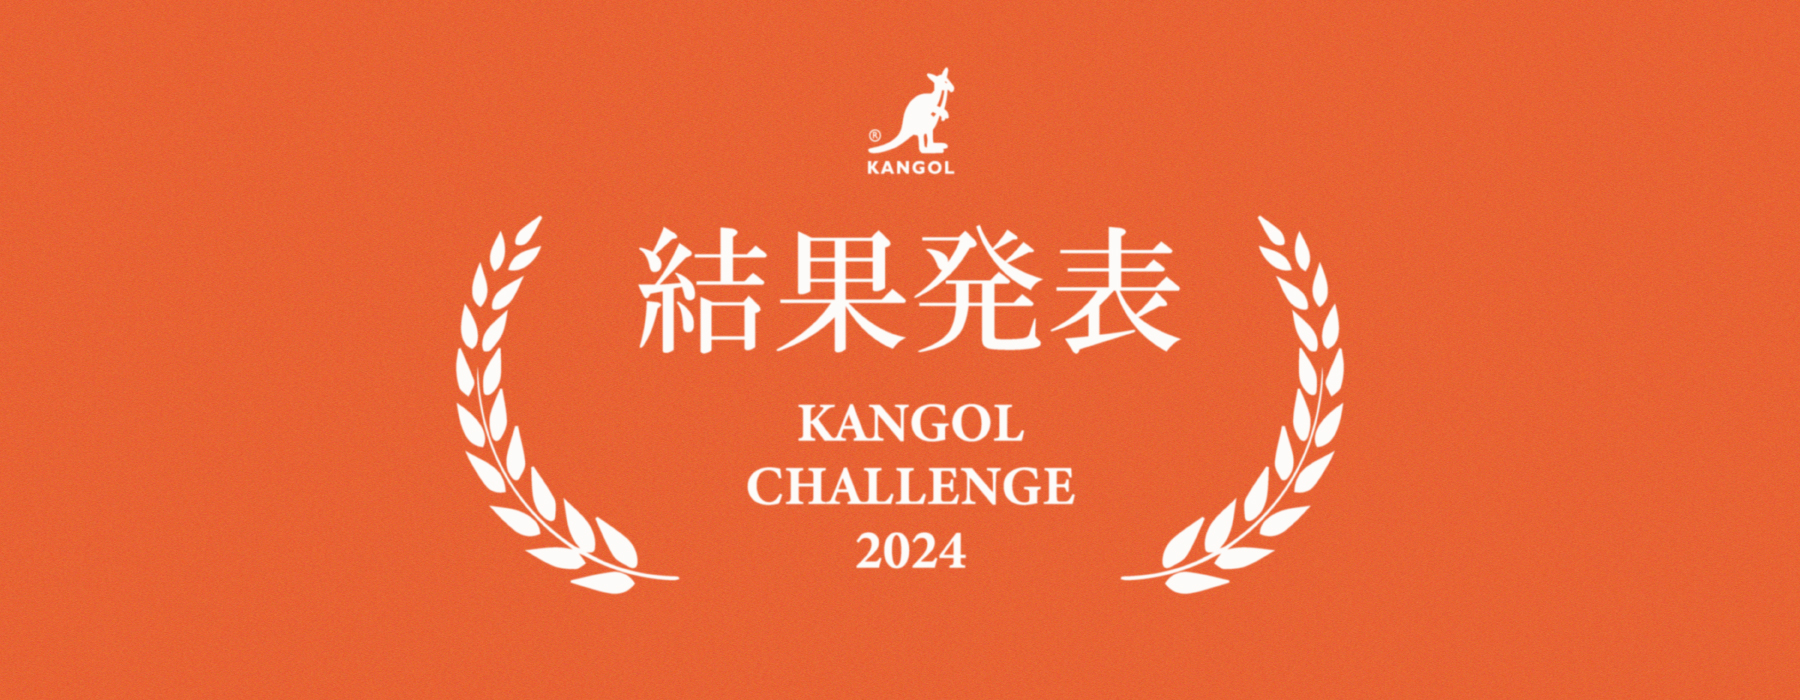 【KANGOL CHALLENGE 2024 】結果発表